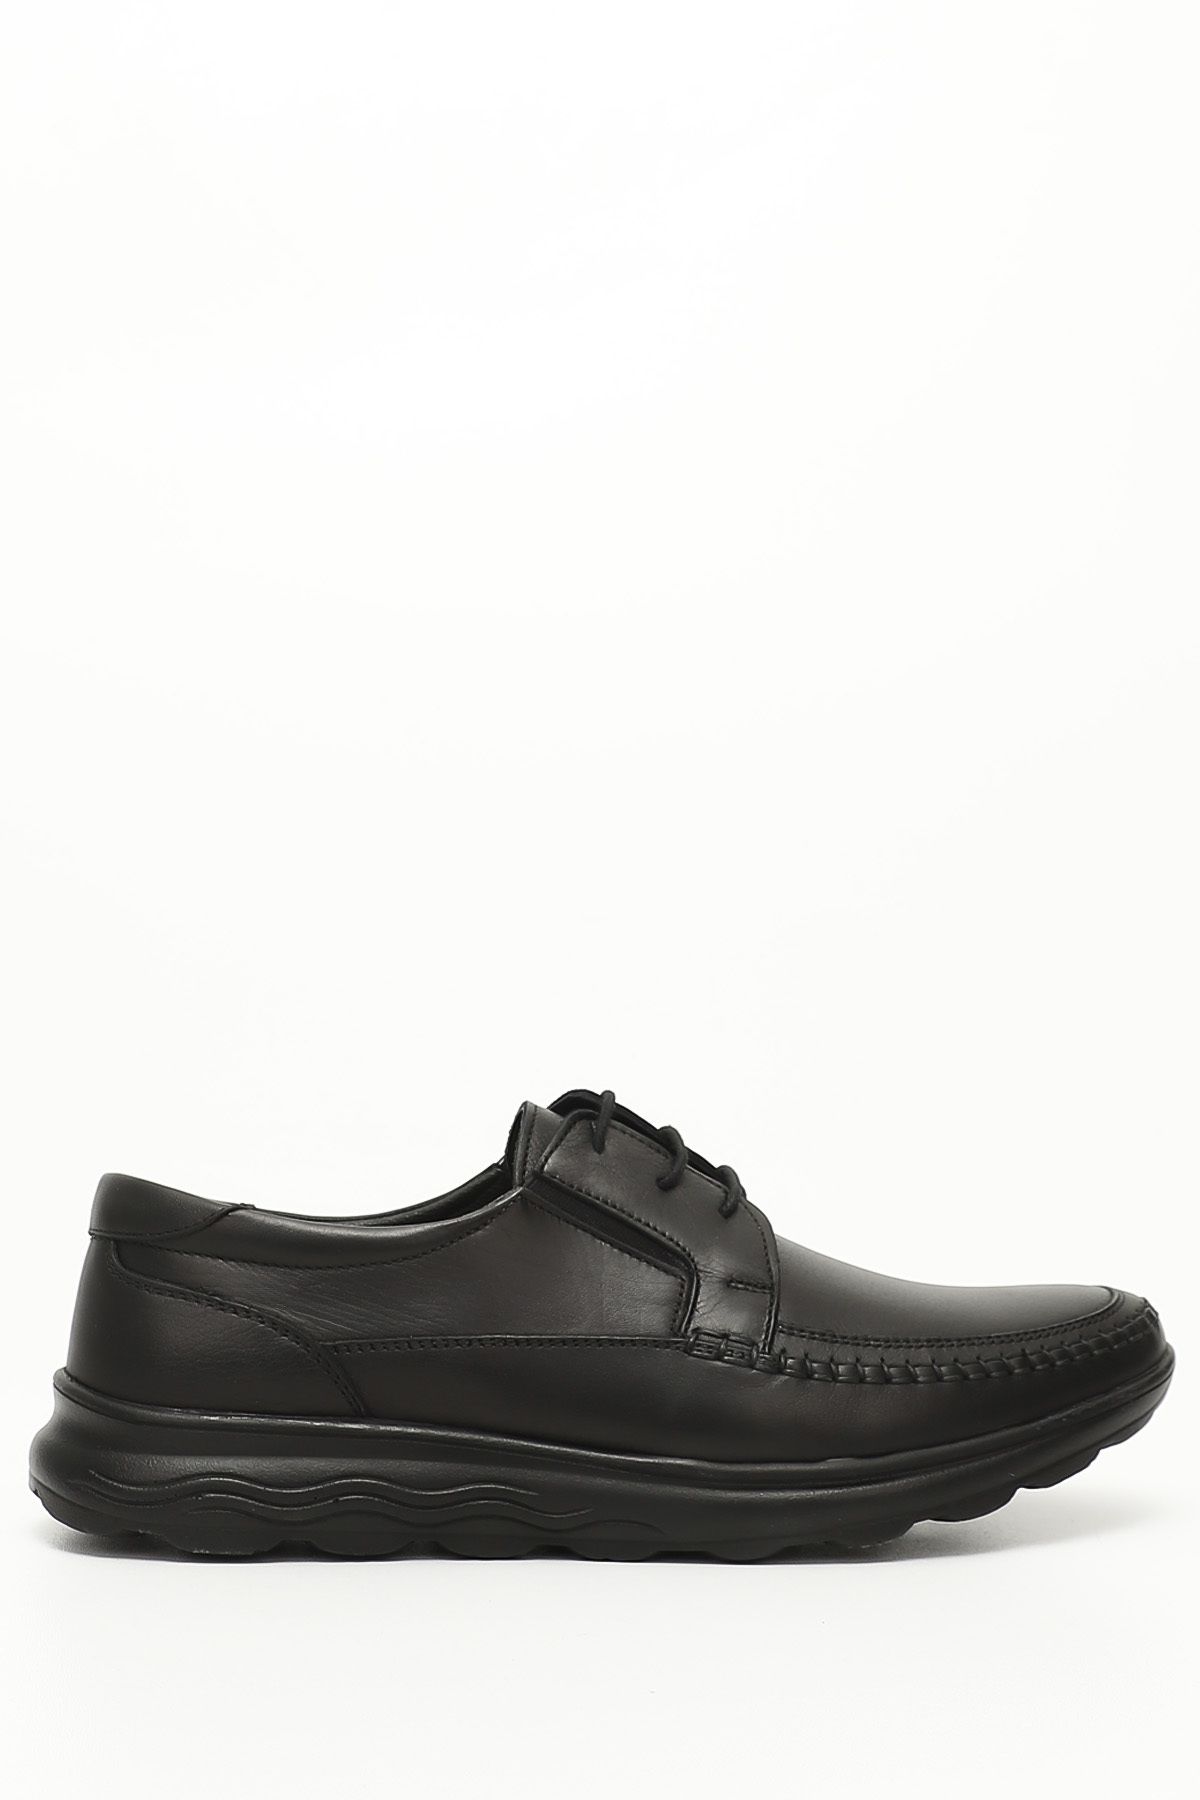 GÖNDERİ(R) Siyah Gön Hakiki Deri Yuvarlak Burun Bağcıklı Günlük Erkek Ayakkabı 42256